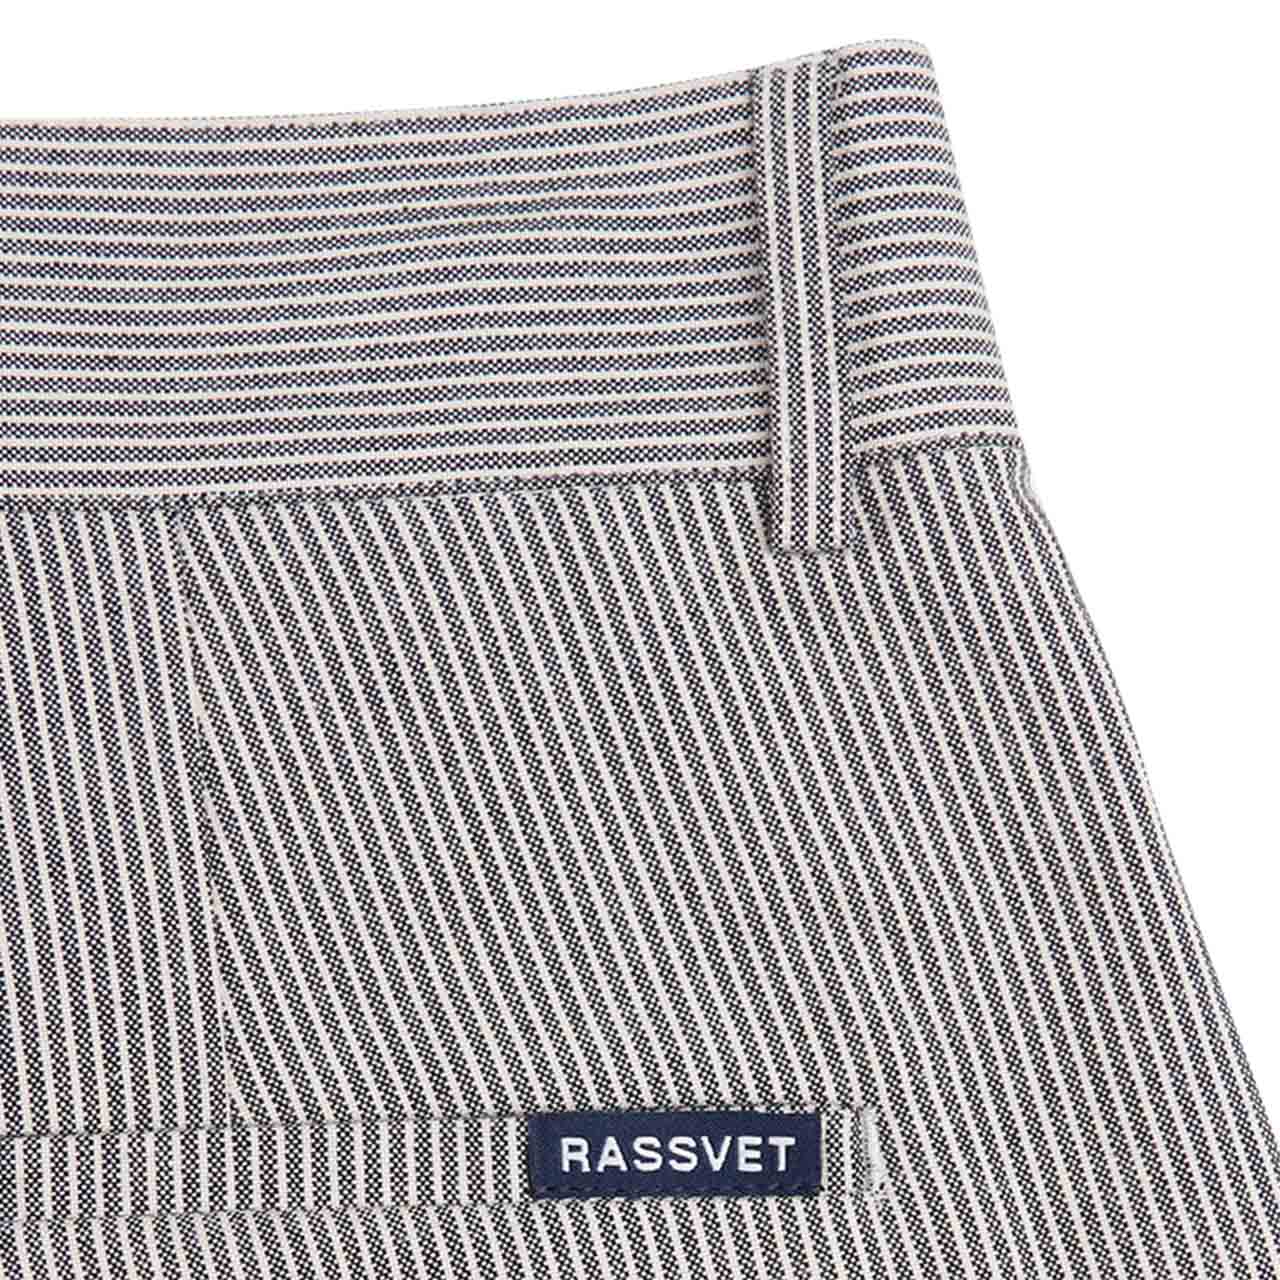 rassvet space woven striped pants (black)